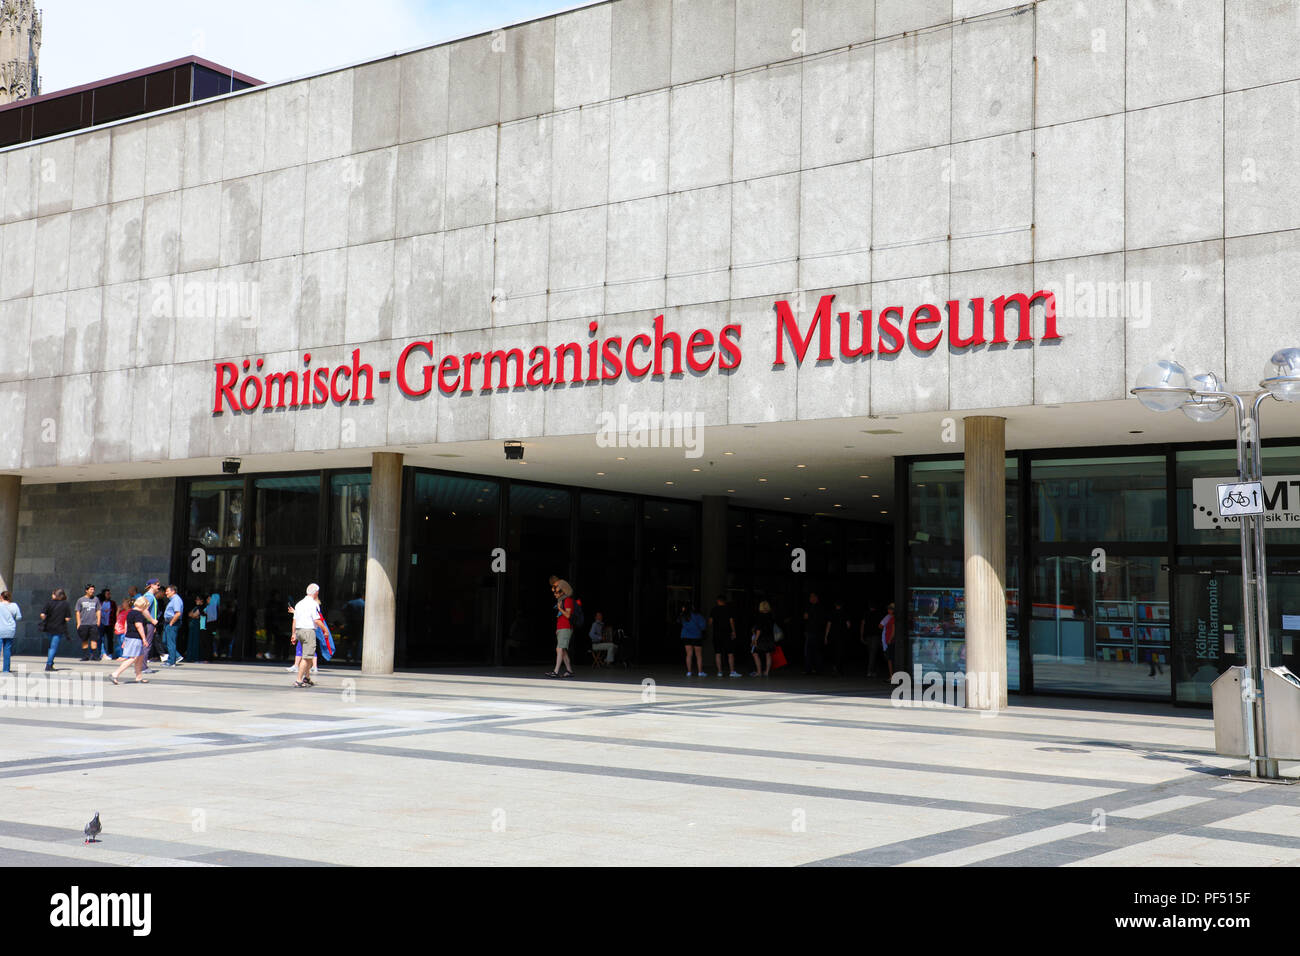 Köln, Deutschland - 31. MAI 2018: Eingang von Römisch-germanisches Museum (Römisch-Germanische Museum) in Köln, Deutschland Stockfoto